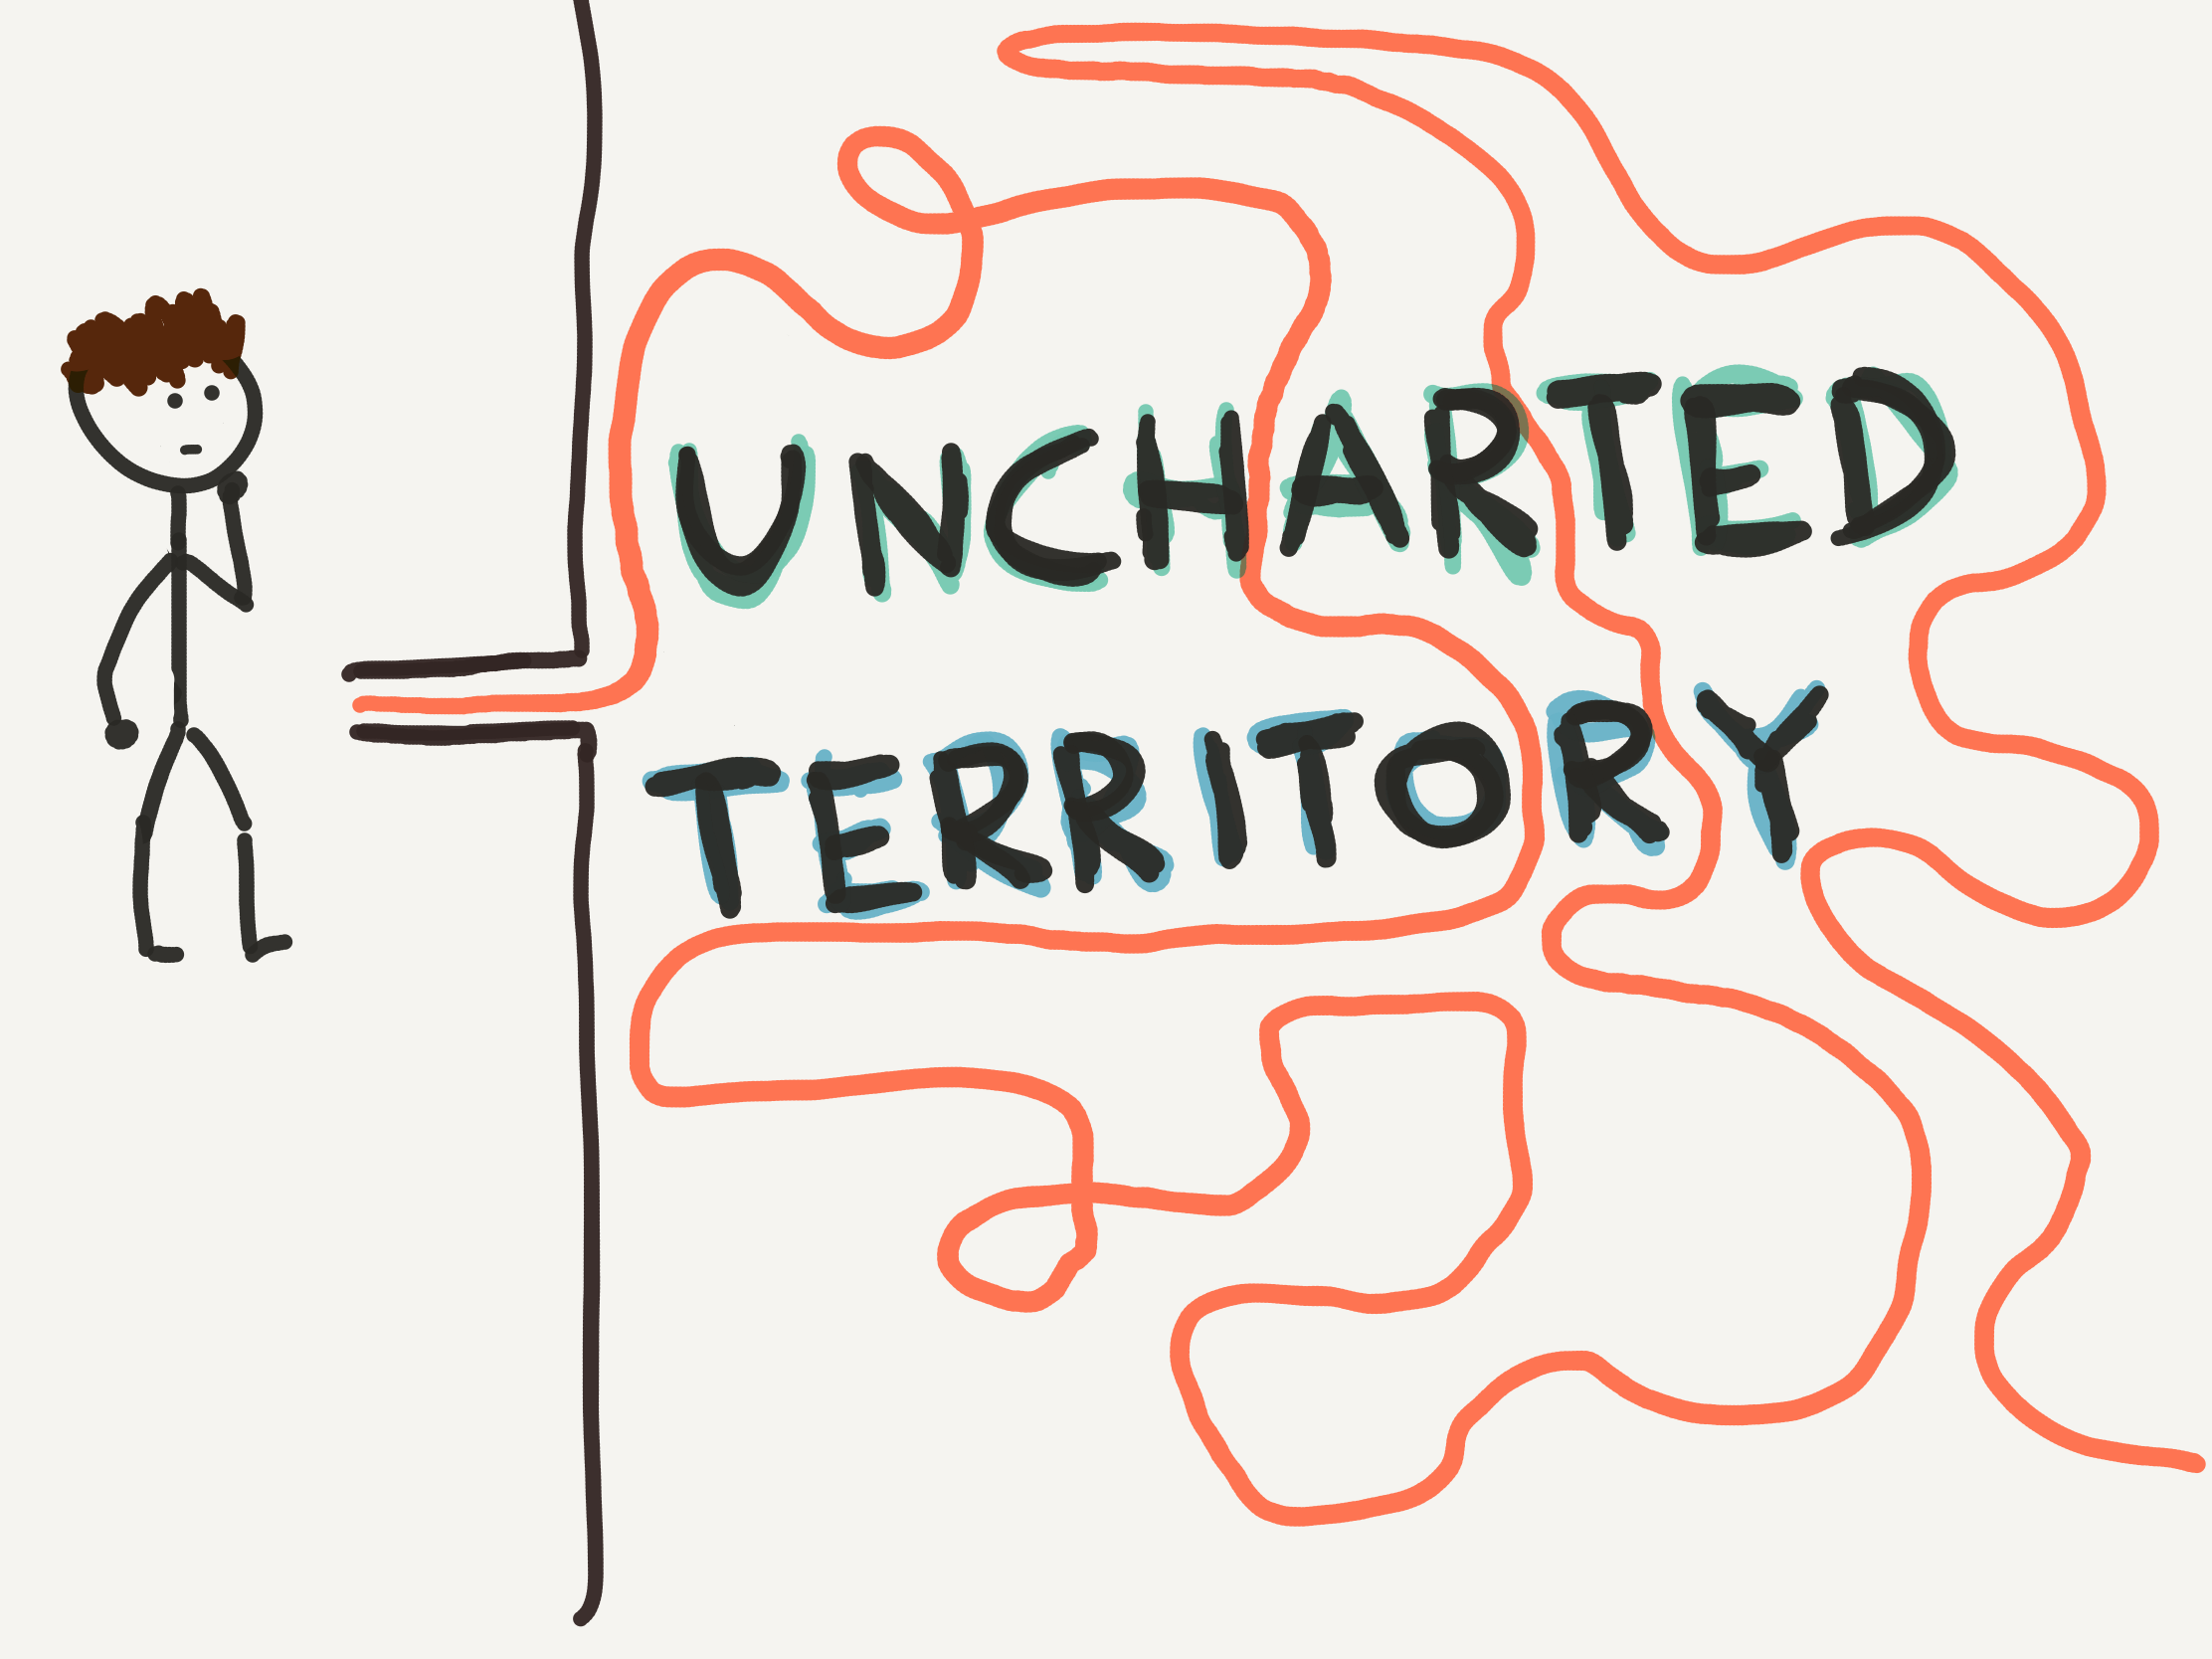 Uncharted territory